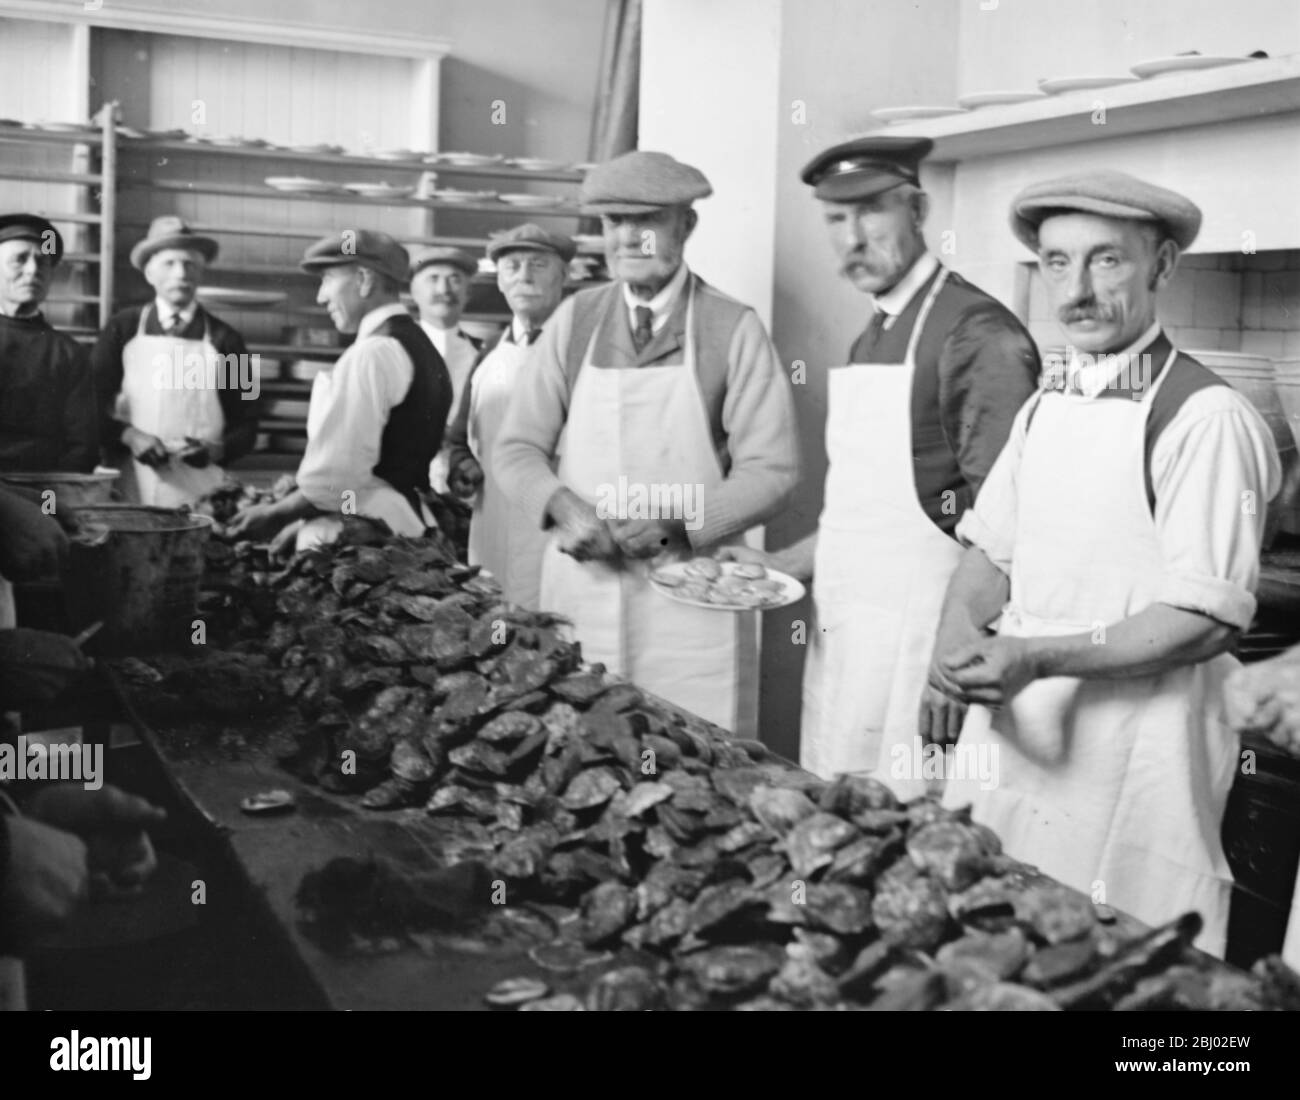 Colchester - un esercito di uomini sono stati impiegati ostriche di apertura per la festa annuale - 19 ottobre 1922 Foto Stock